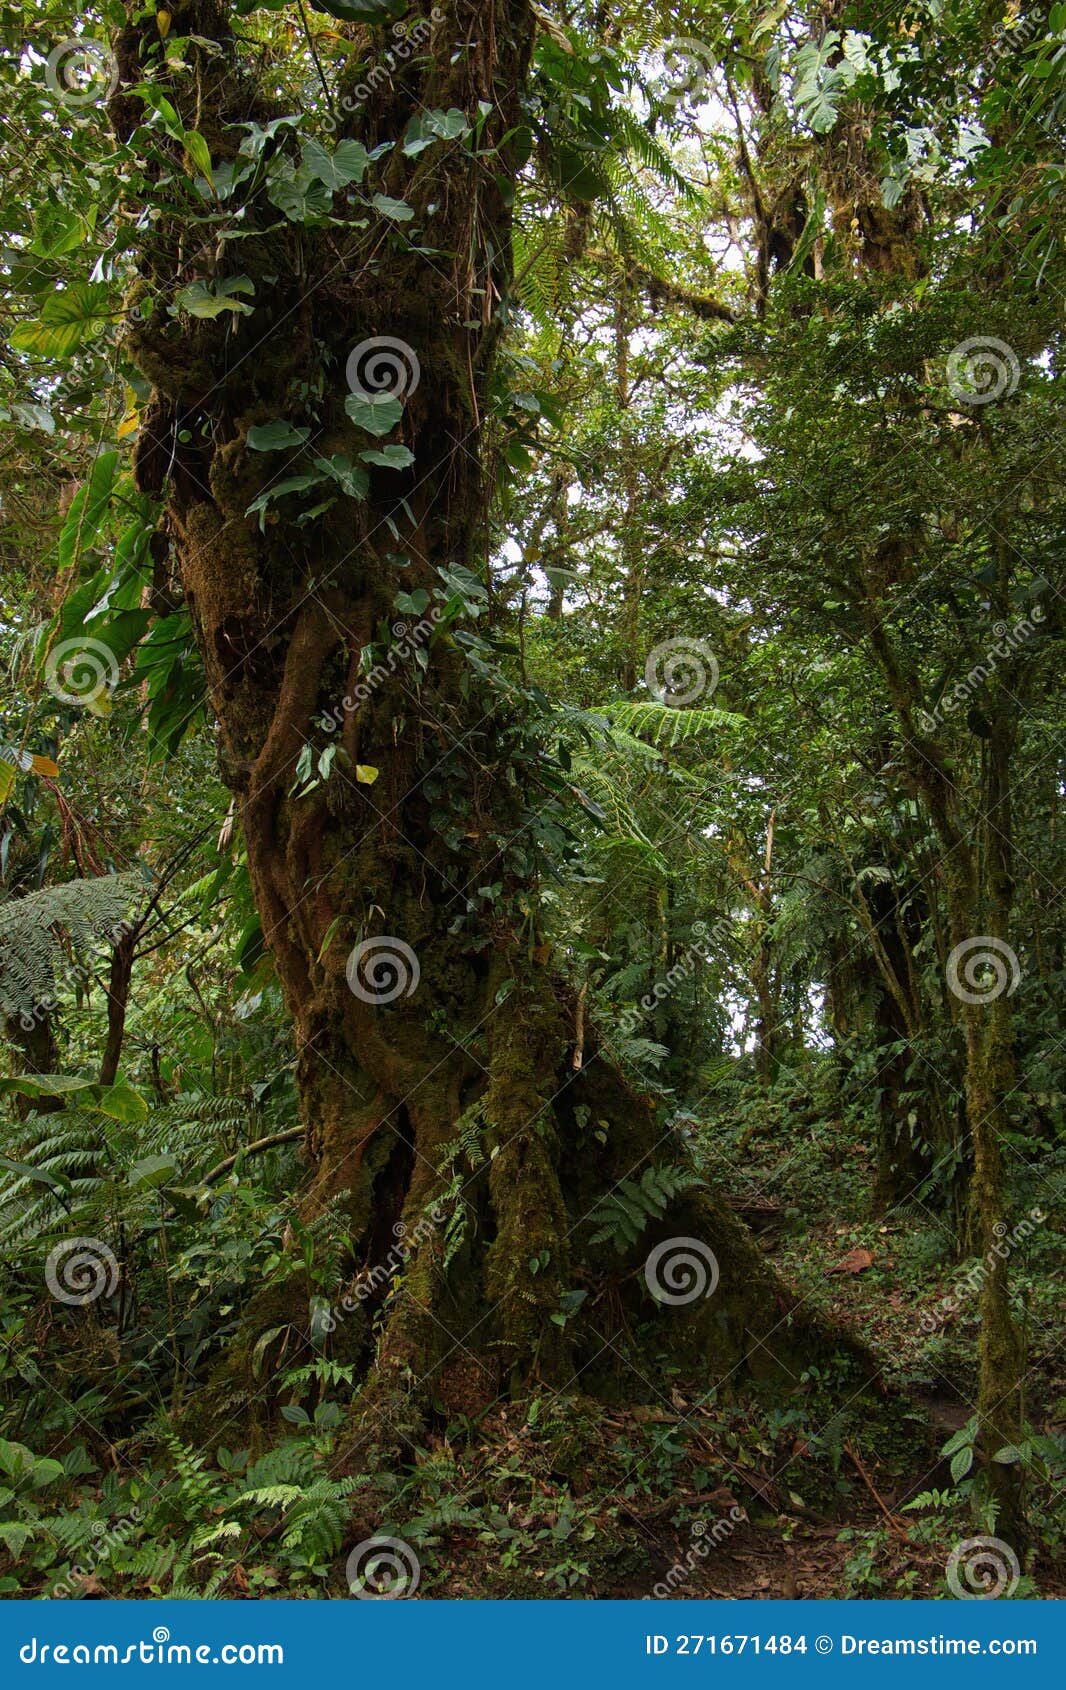 trees in bosque nuboso national park near santa elena in costa rica